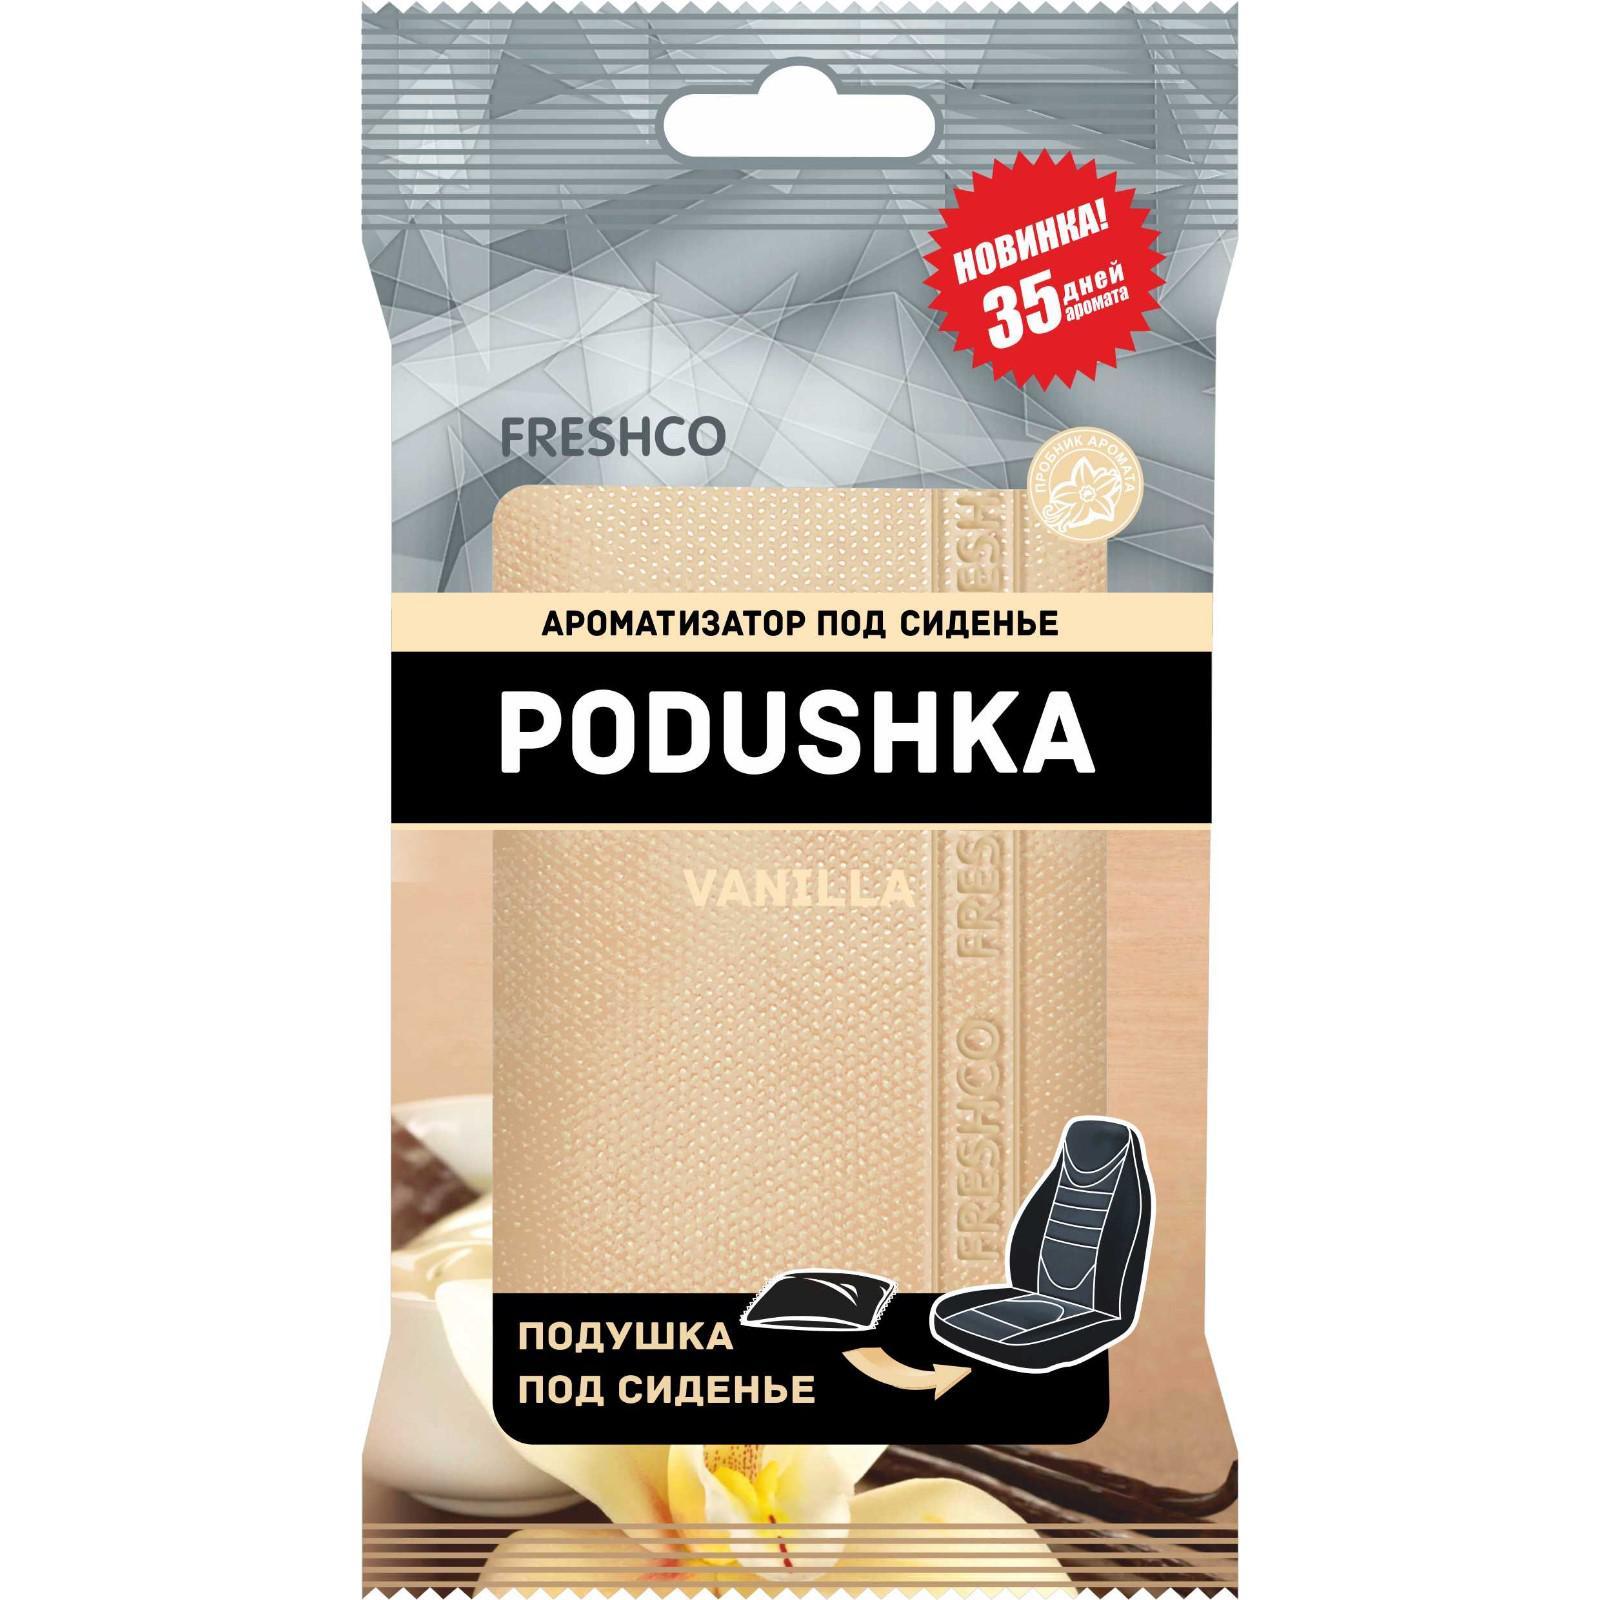 Ароматизатор под сиденье "Vkusno Podushka", ваниль 6978880